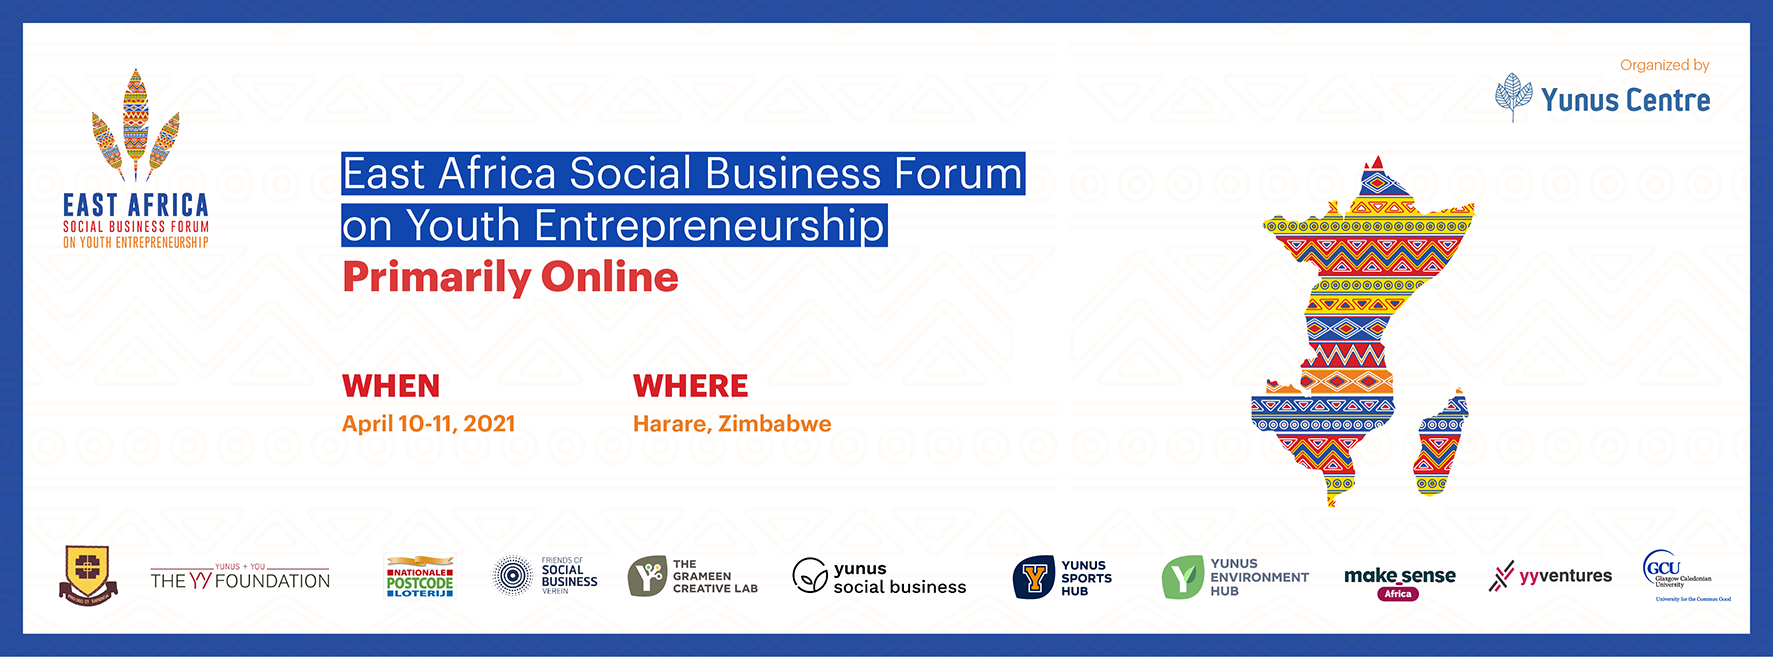 East Africa Social Business Forum on Youth Entrepreneurship